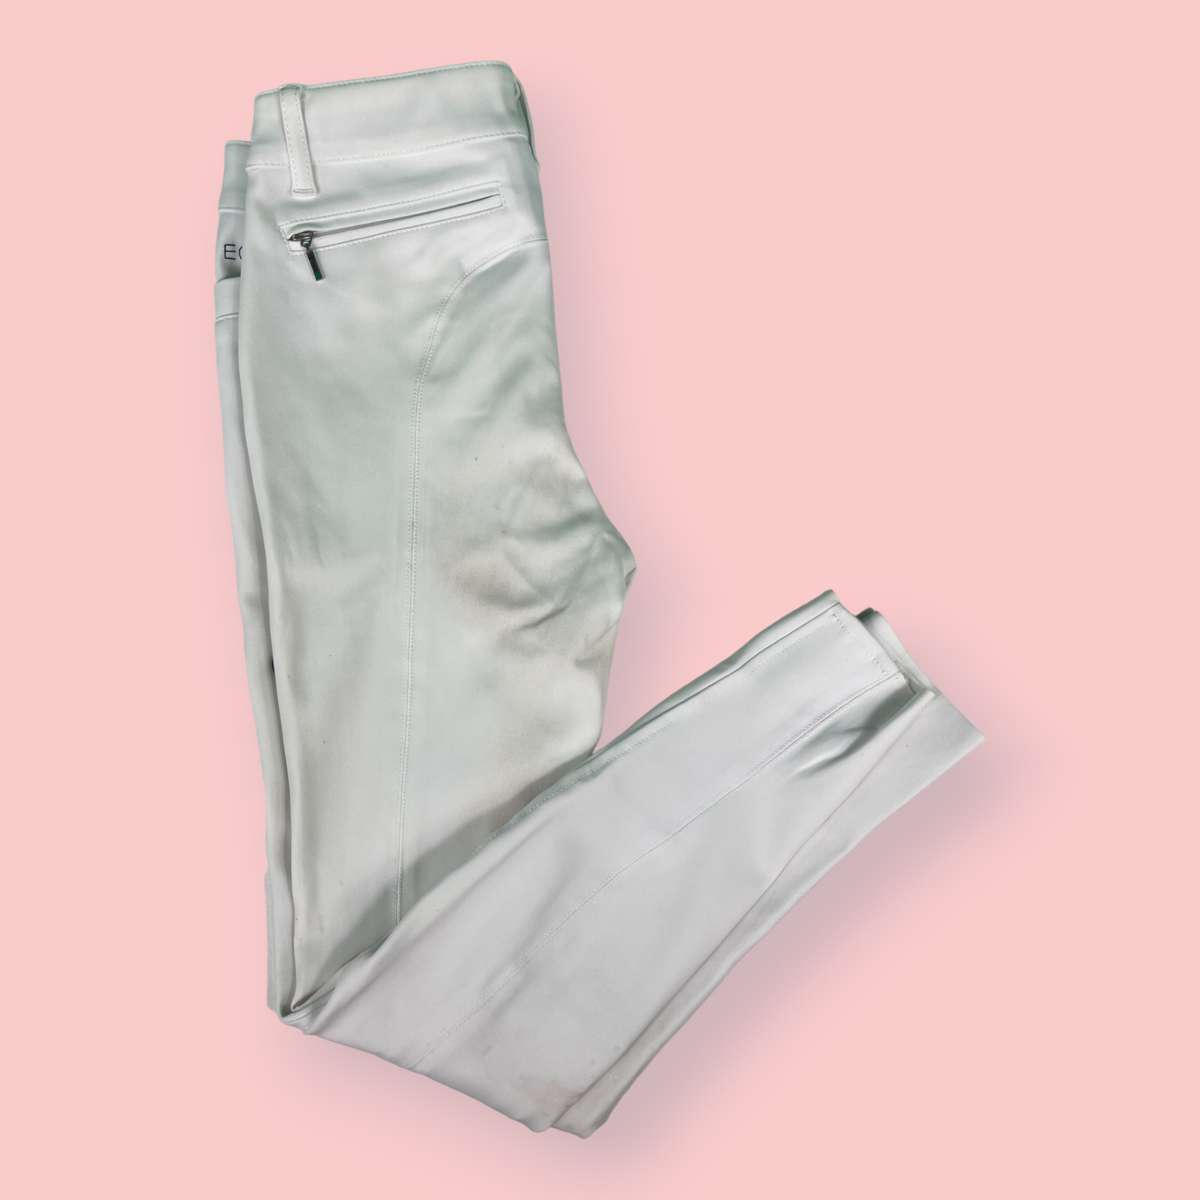 Pantalon de concours blanc - 34 - Ego7